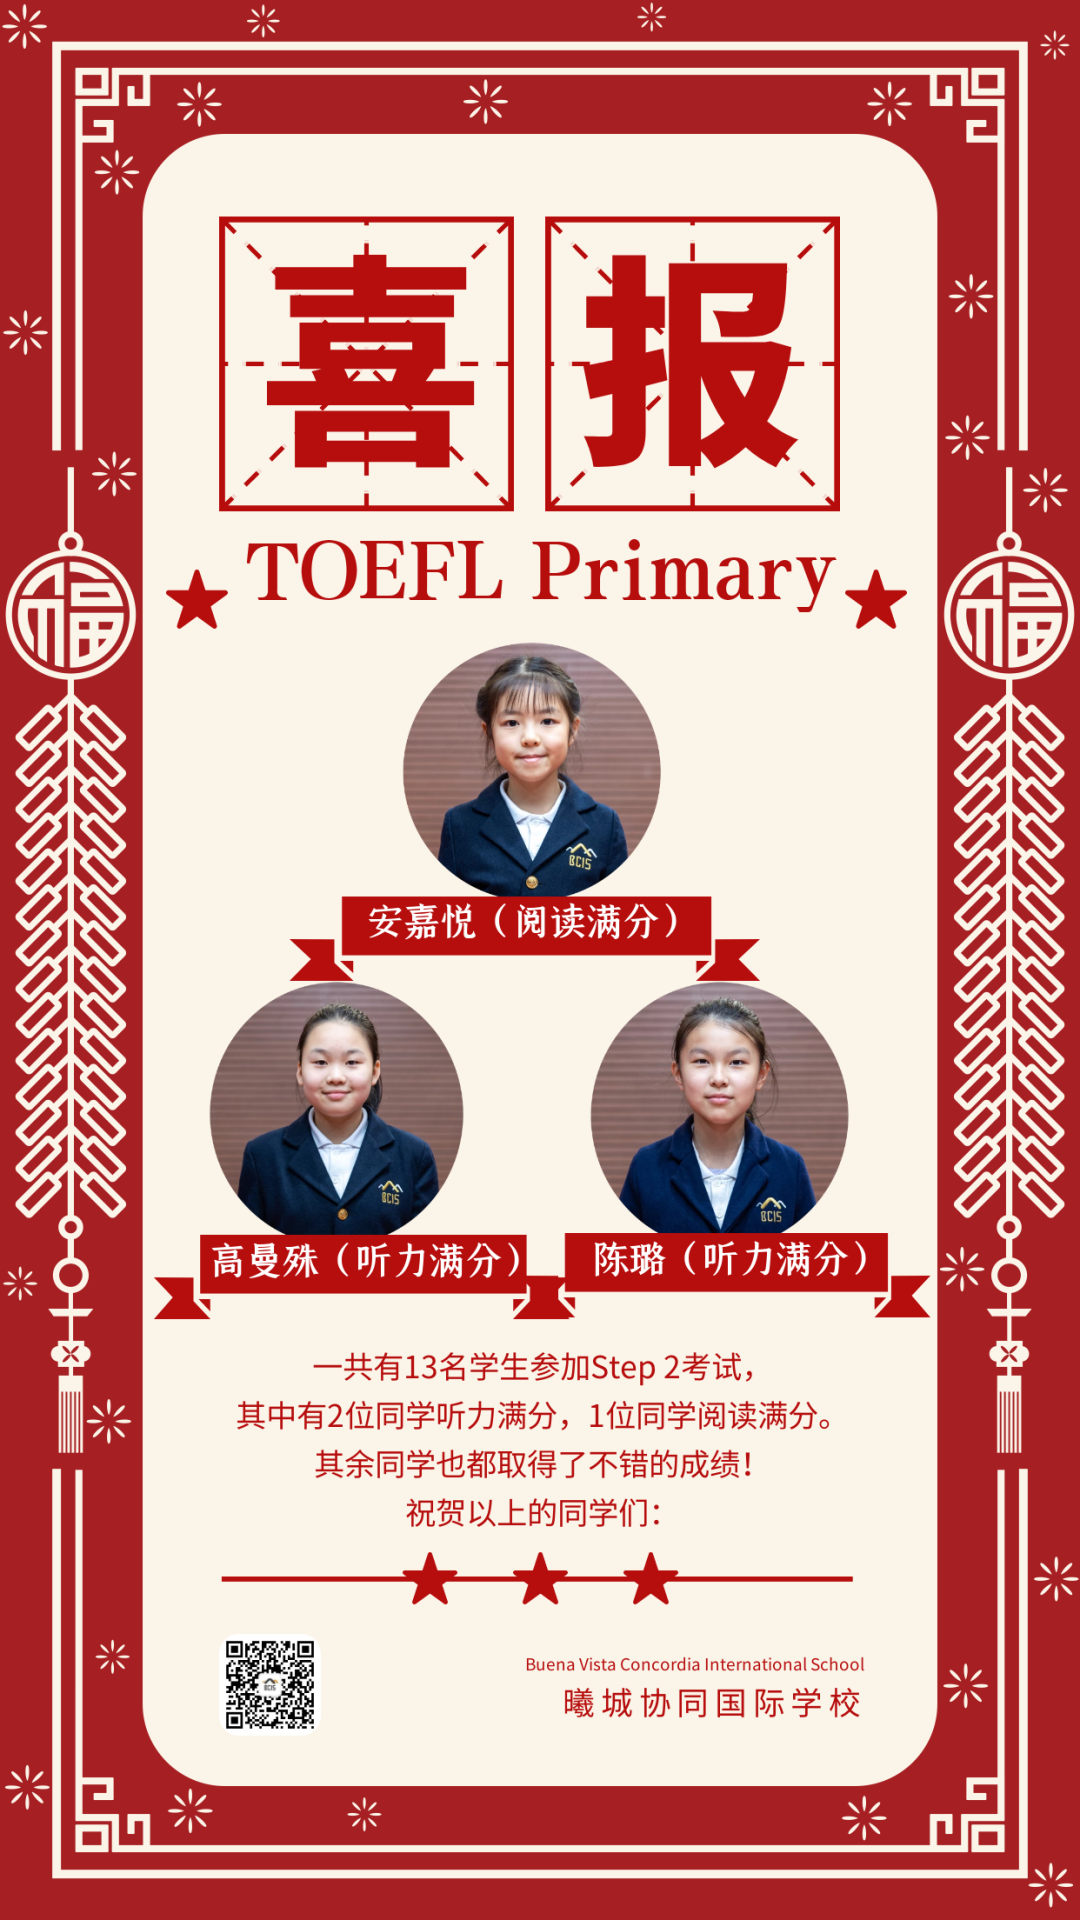 祝贺同学们在TOEFL Primary考试中获得优秀成绩！